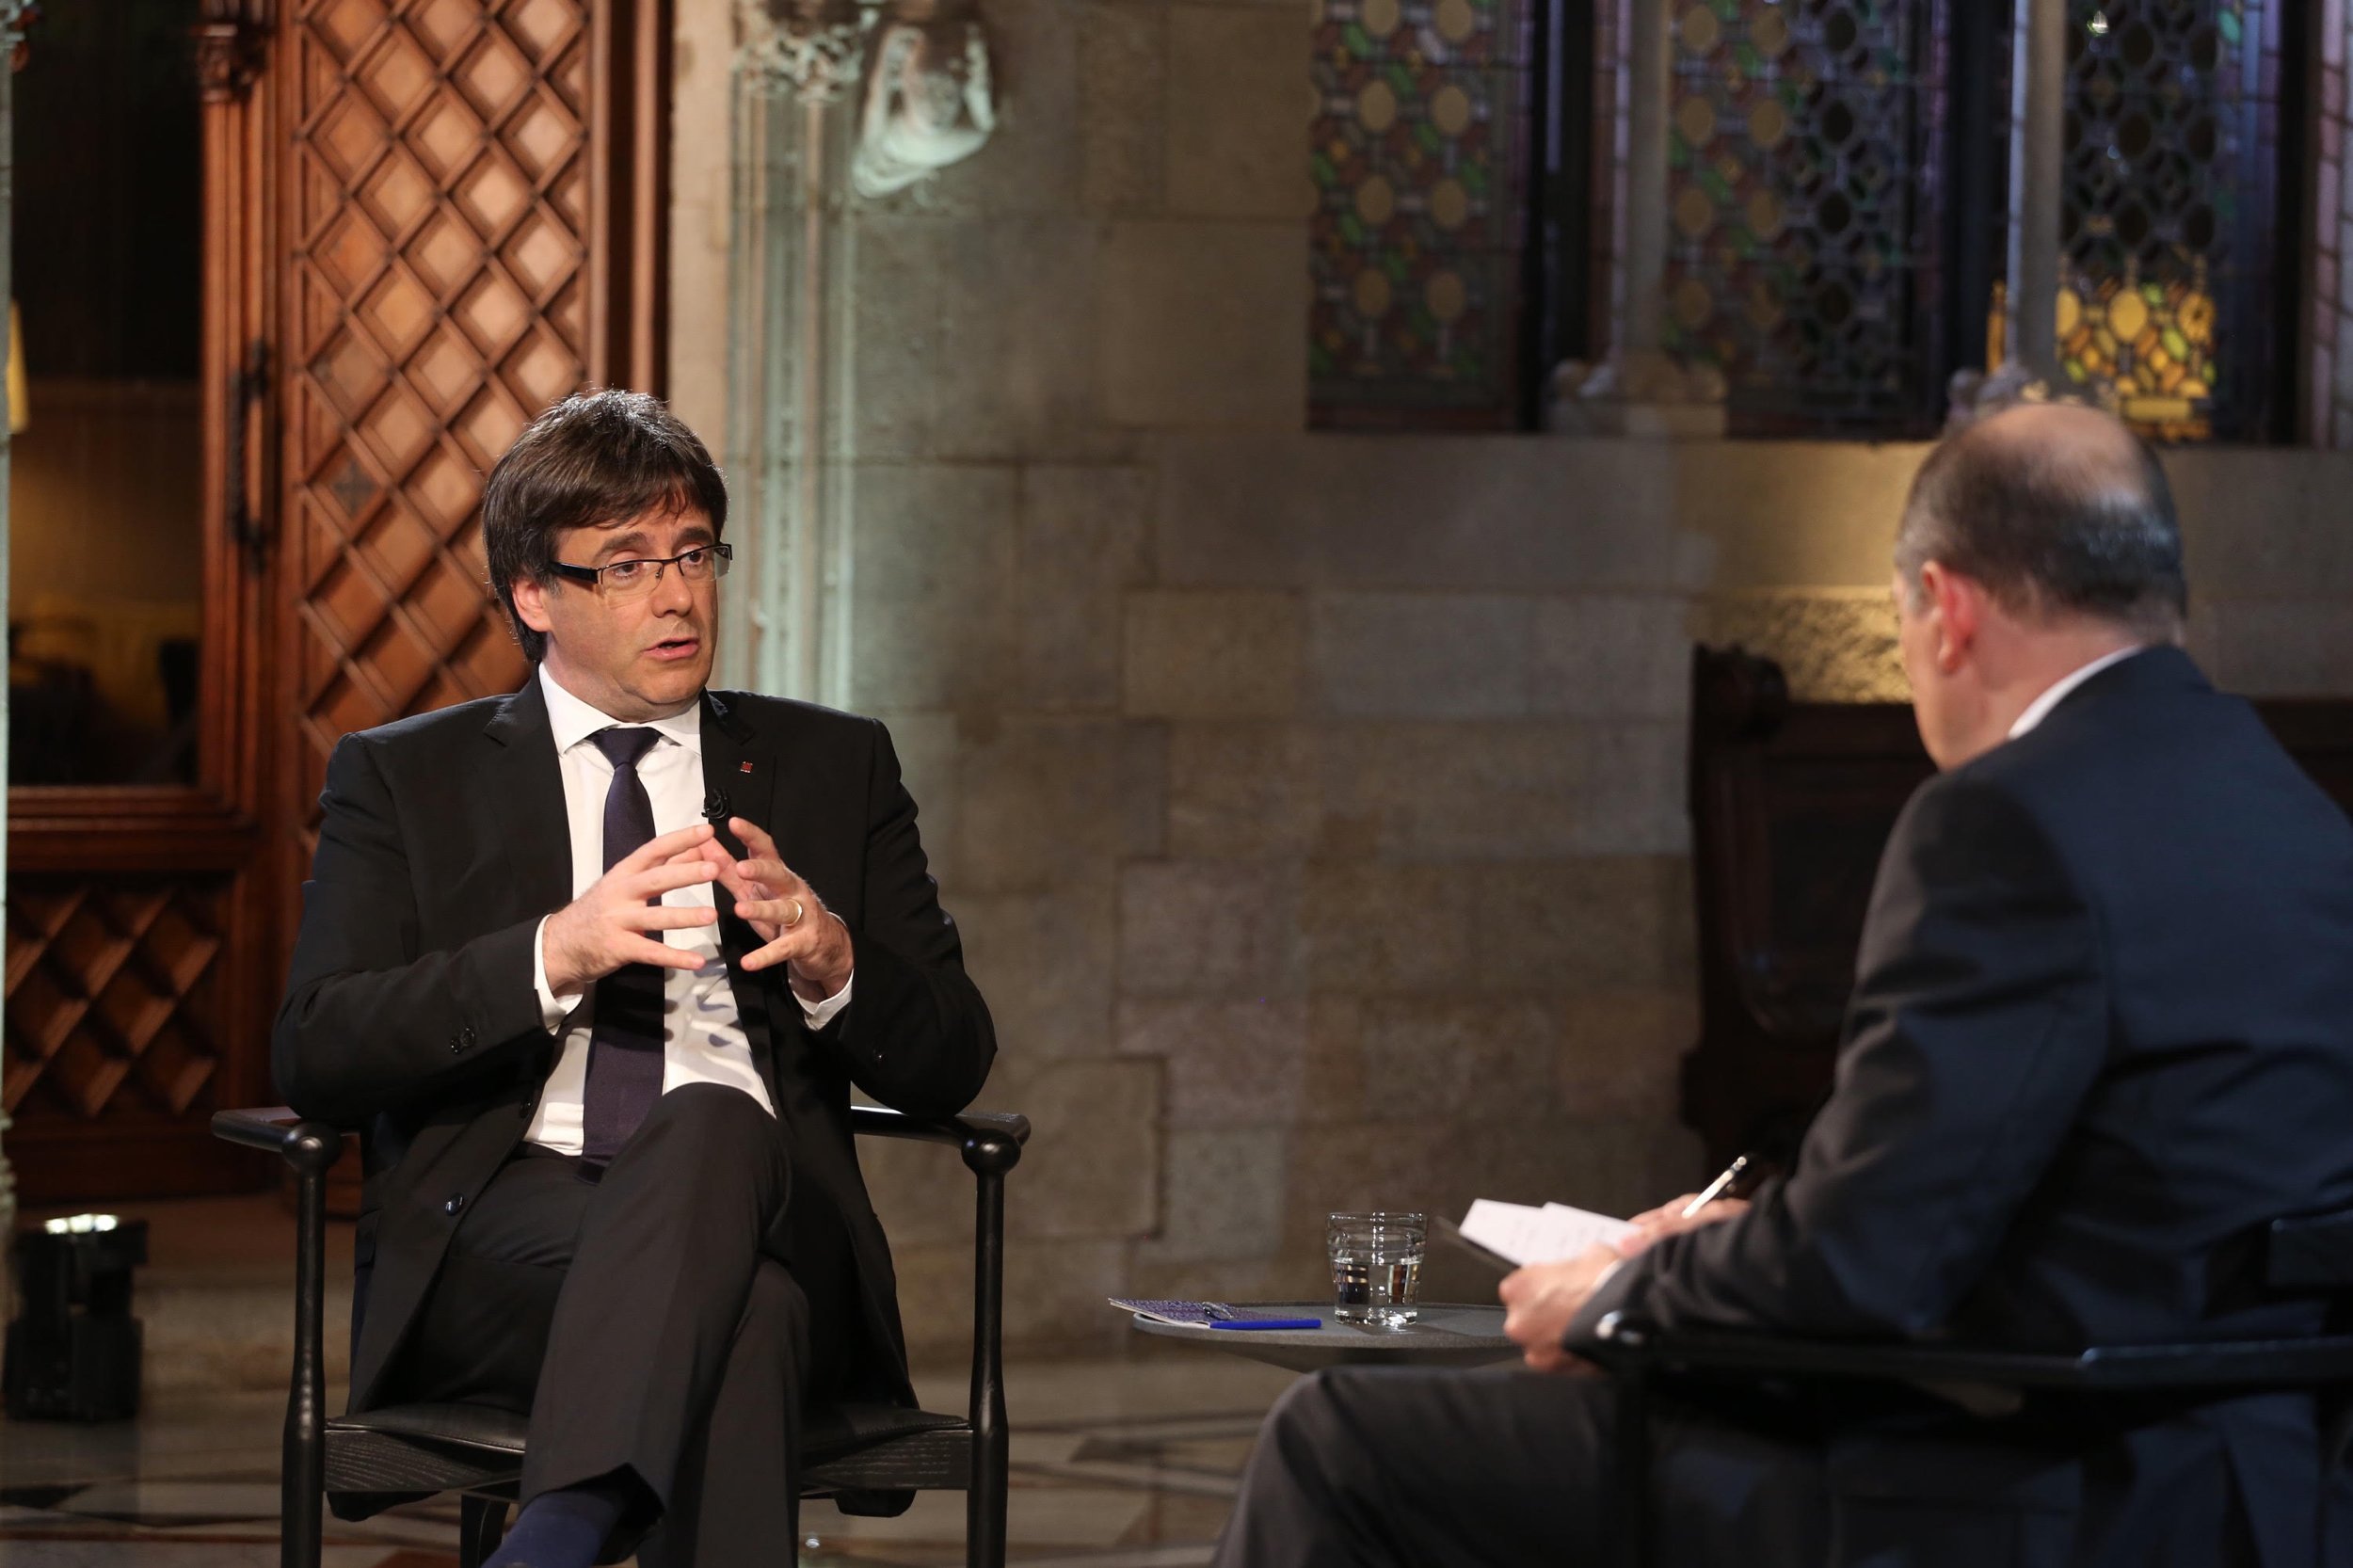 Críticas por no decir "president Puigdemont" en el anuncio de su entrevista en TV3